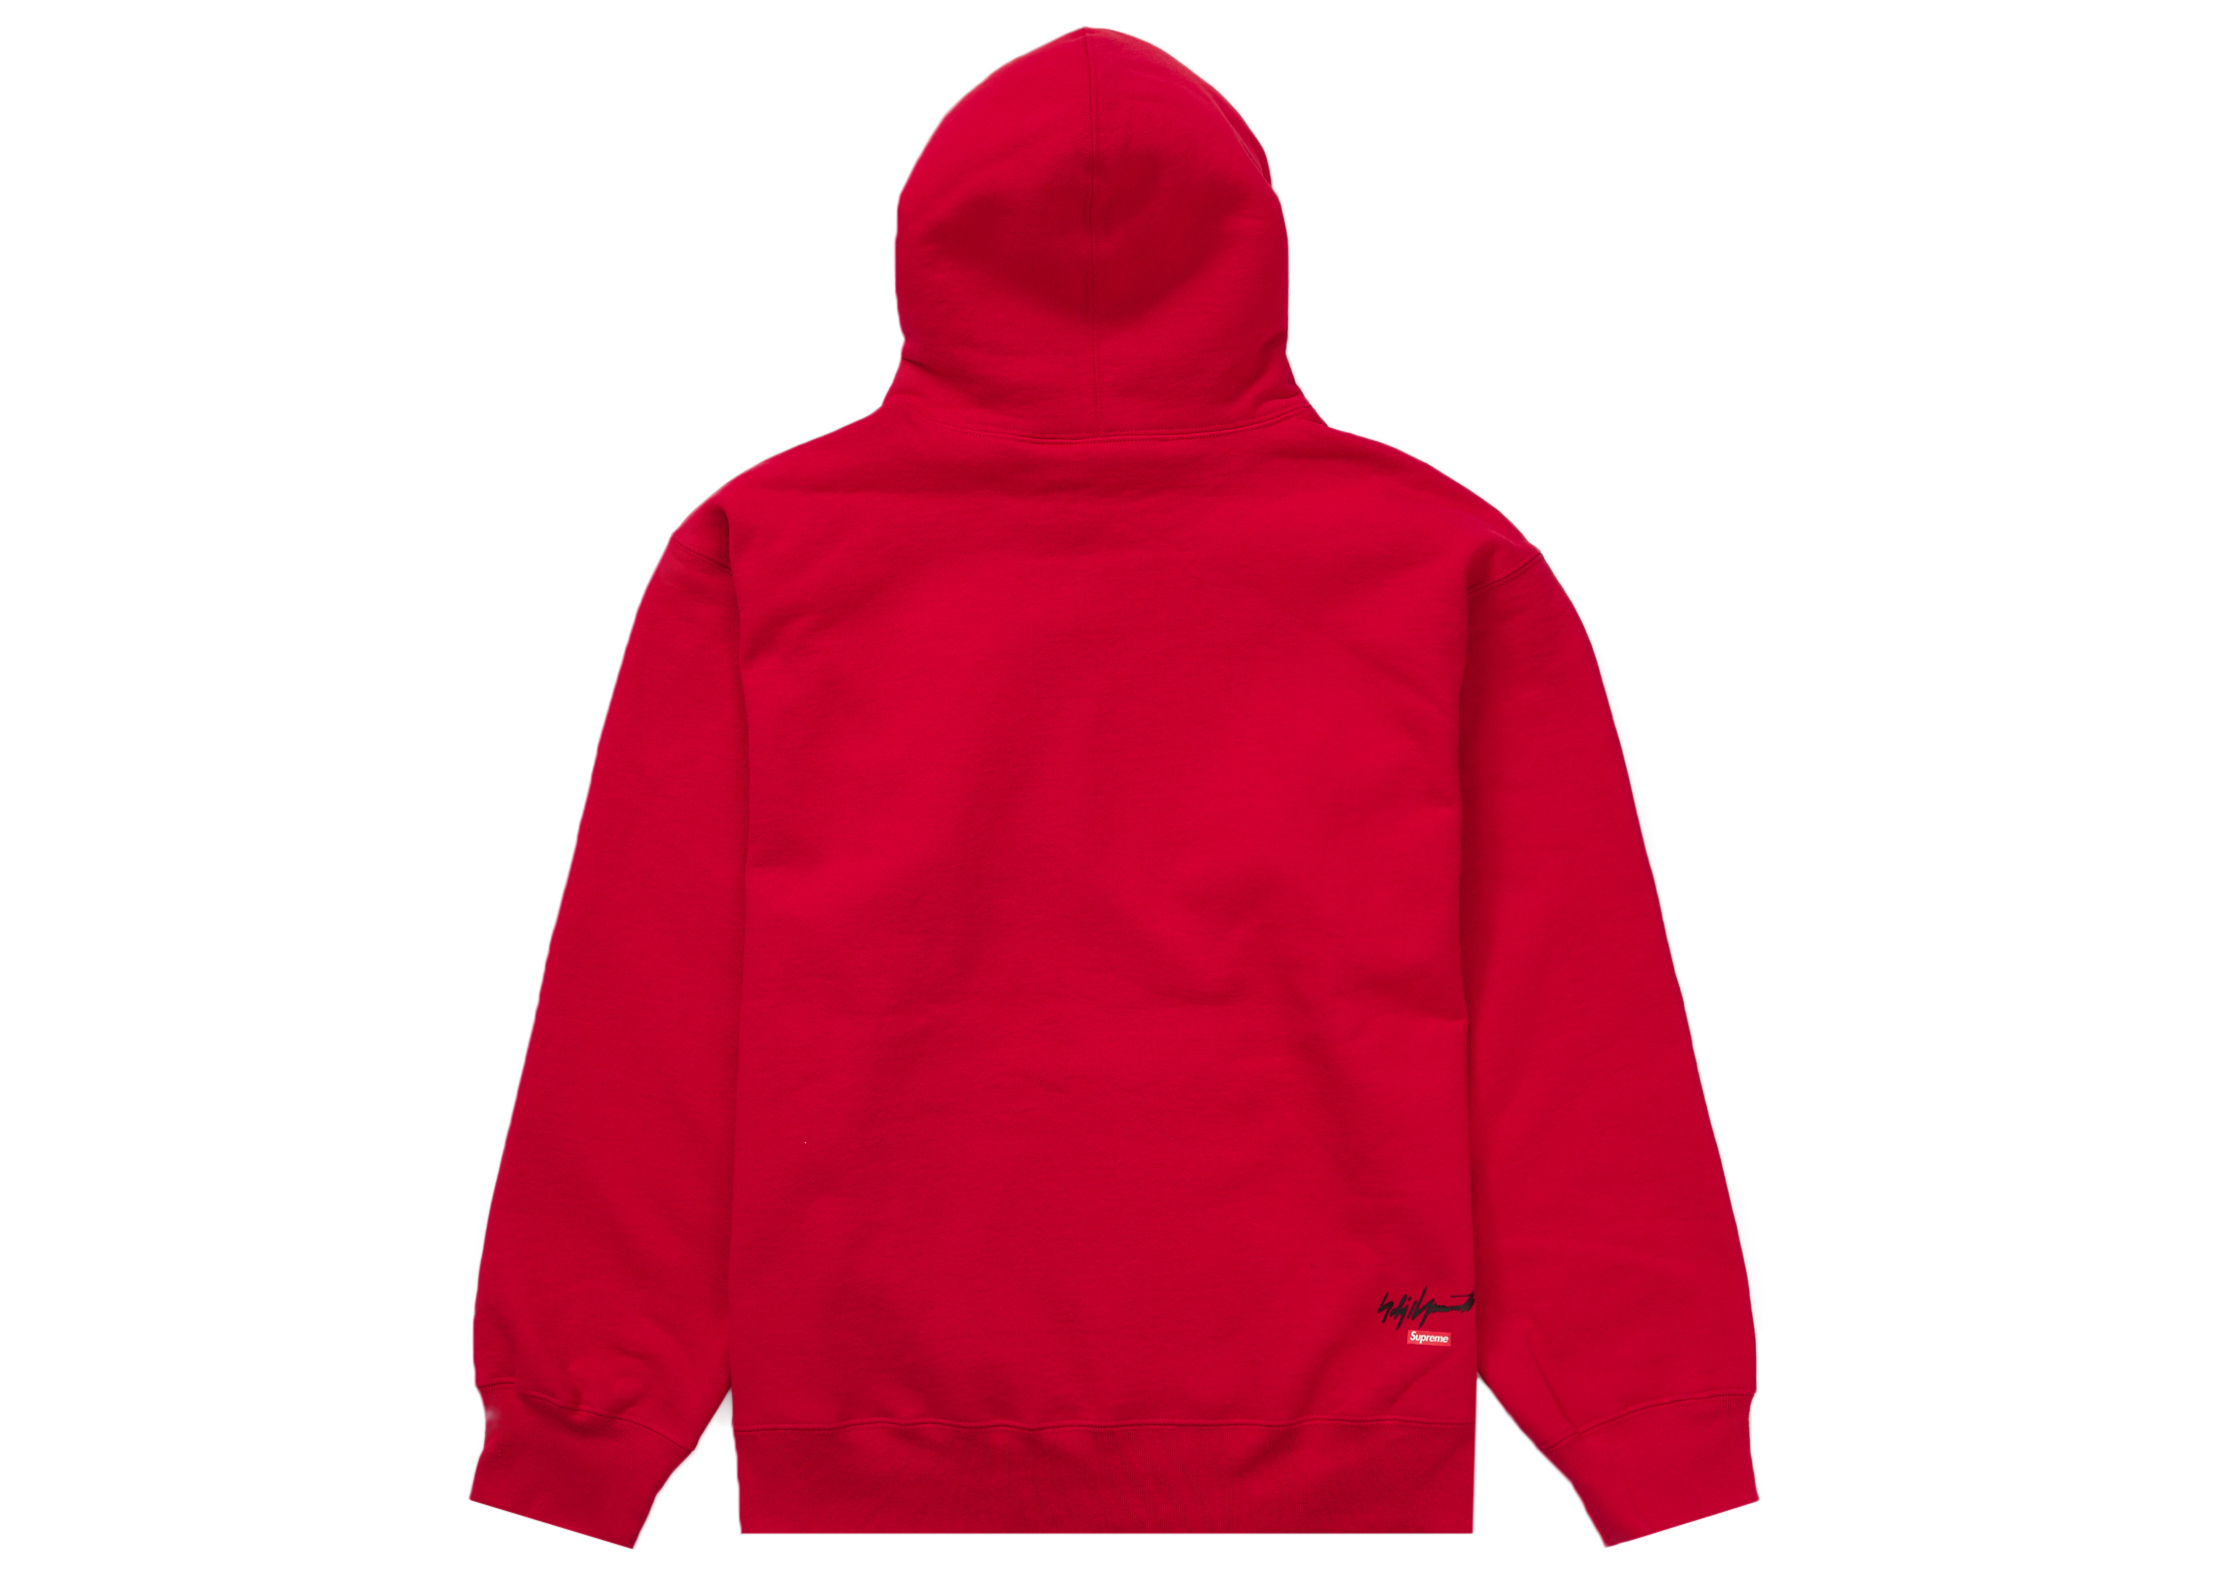 Supreme Yohji Yamamoto TEKKEN Hooded Sweatshirt Red Men's - FW22 - US